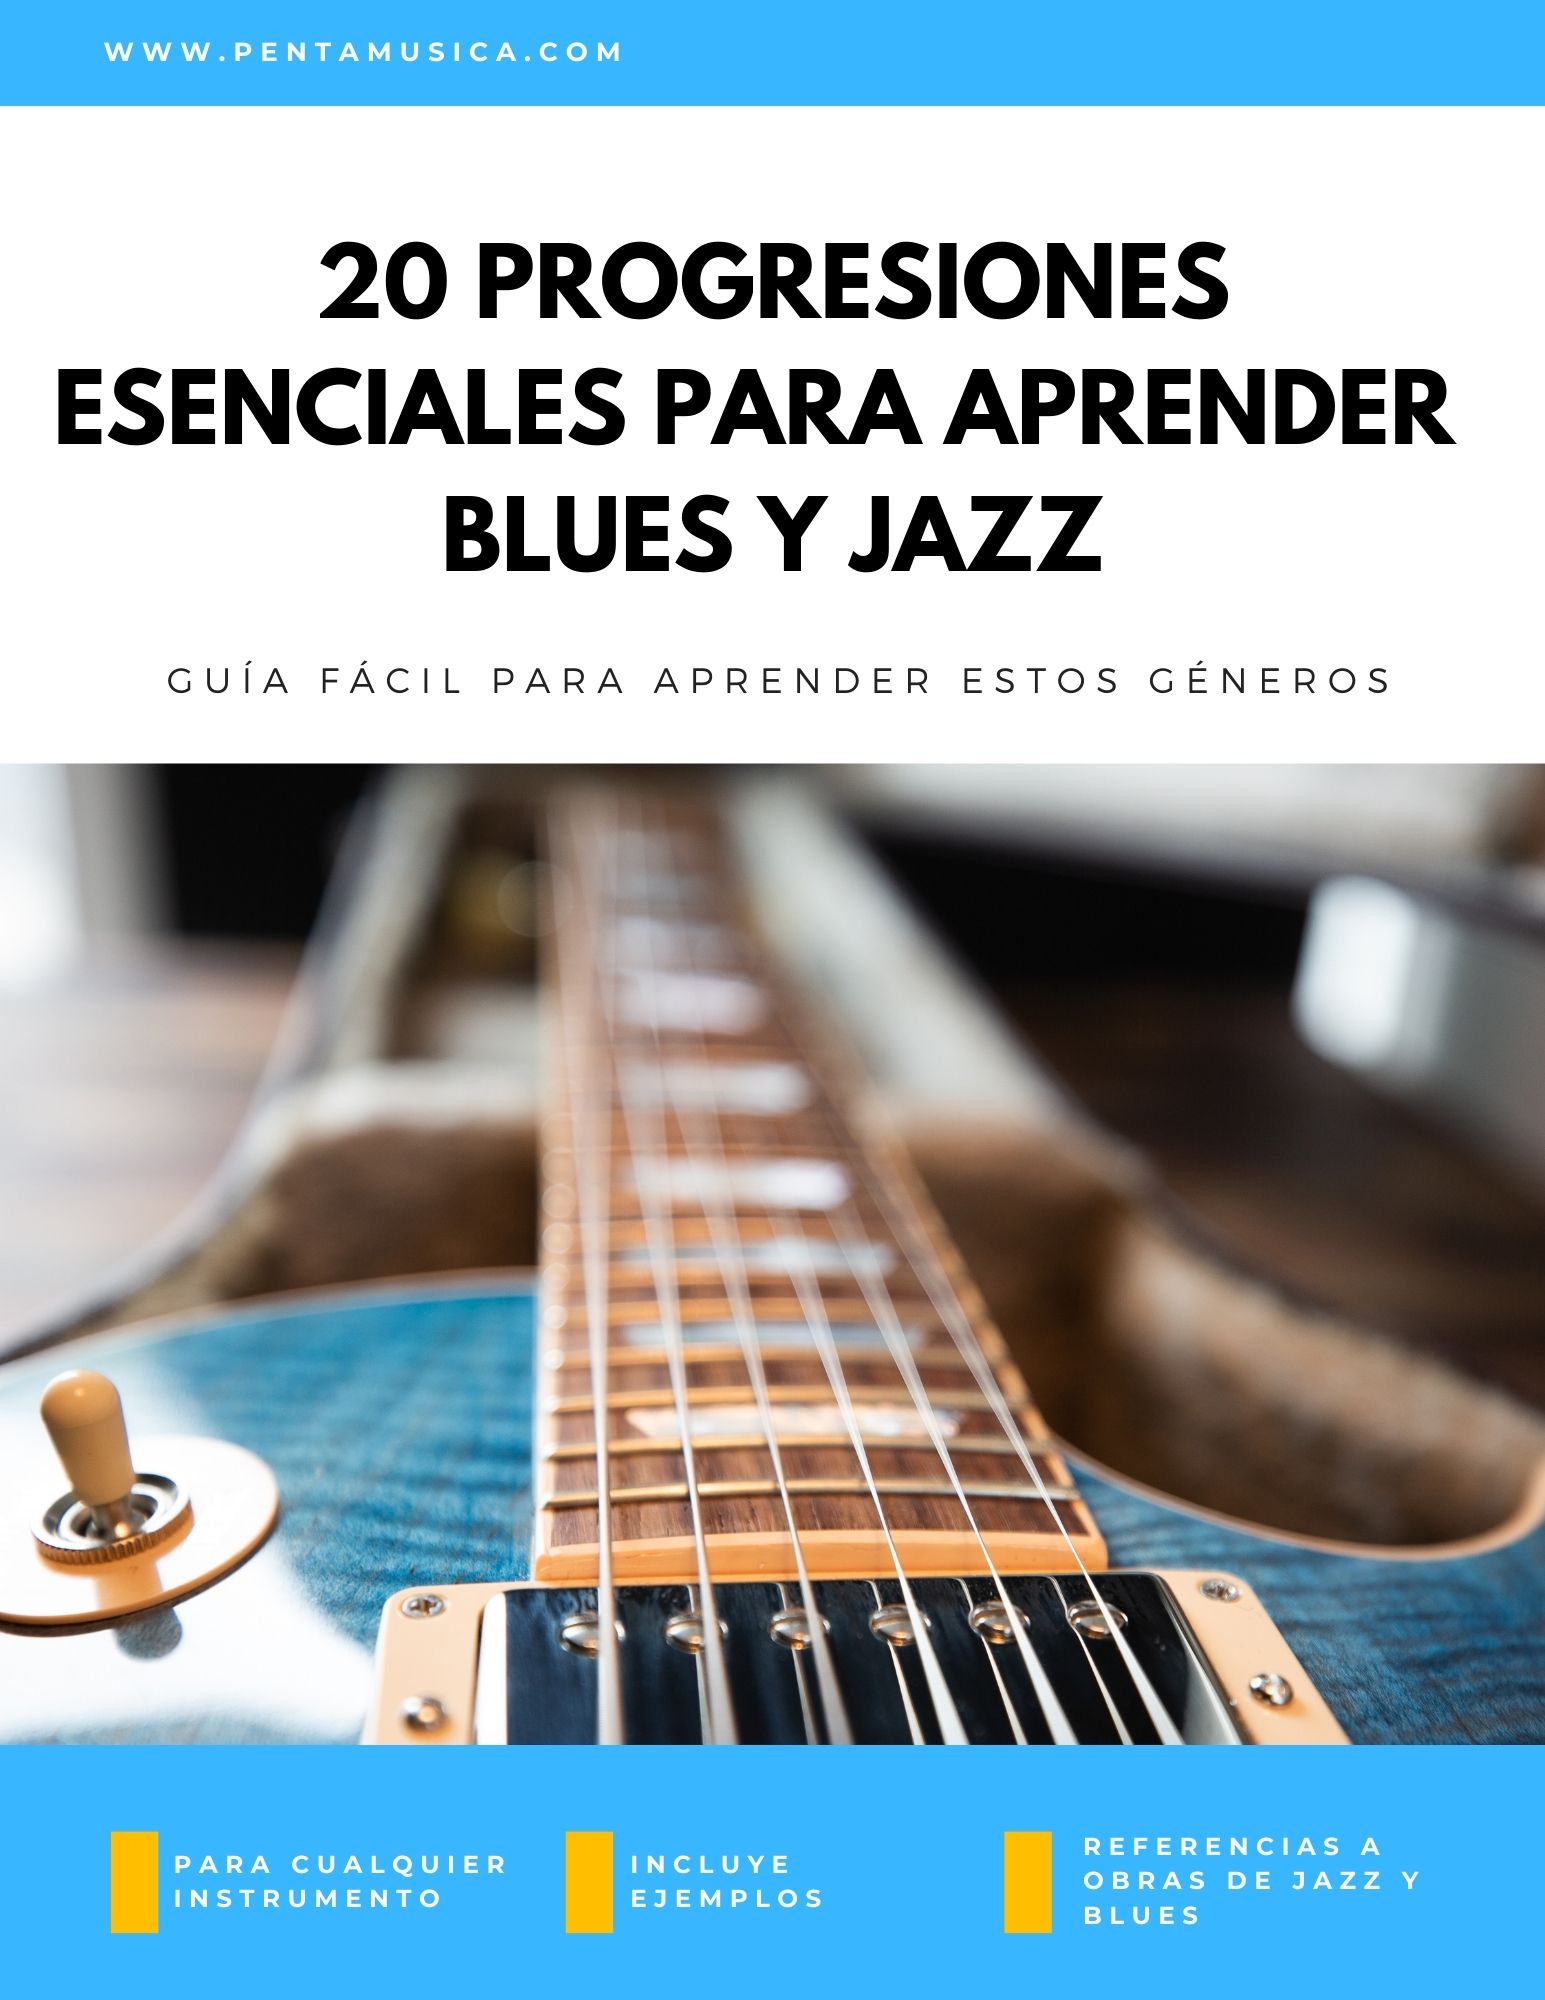 auricular morfina doloroso 20 progresiones esenciales para aprender Blues y Jazz – Pentamúsica. Música  Creativa.